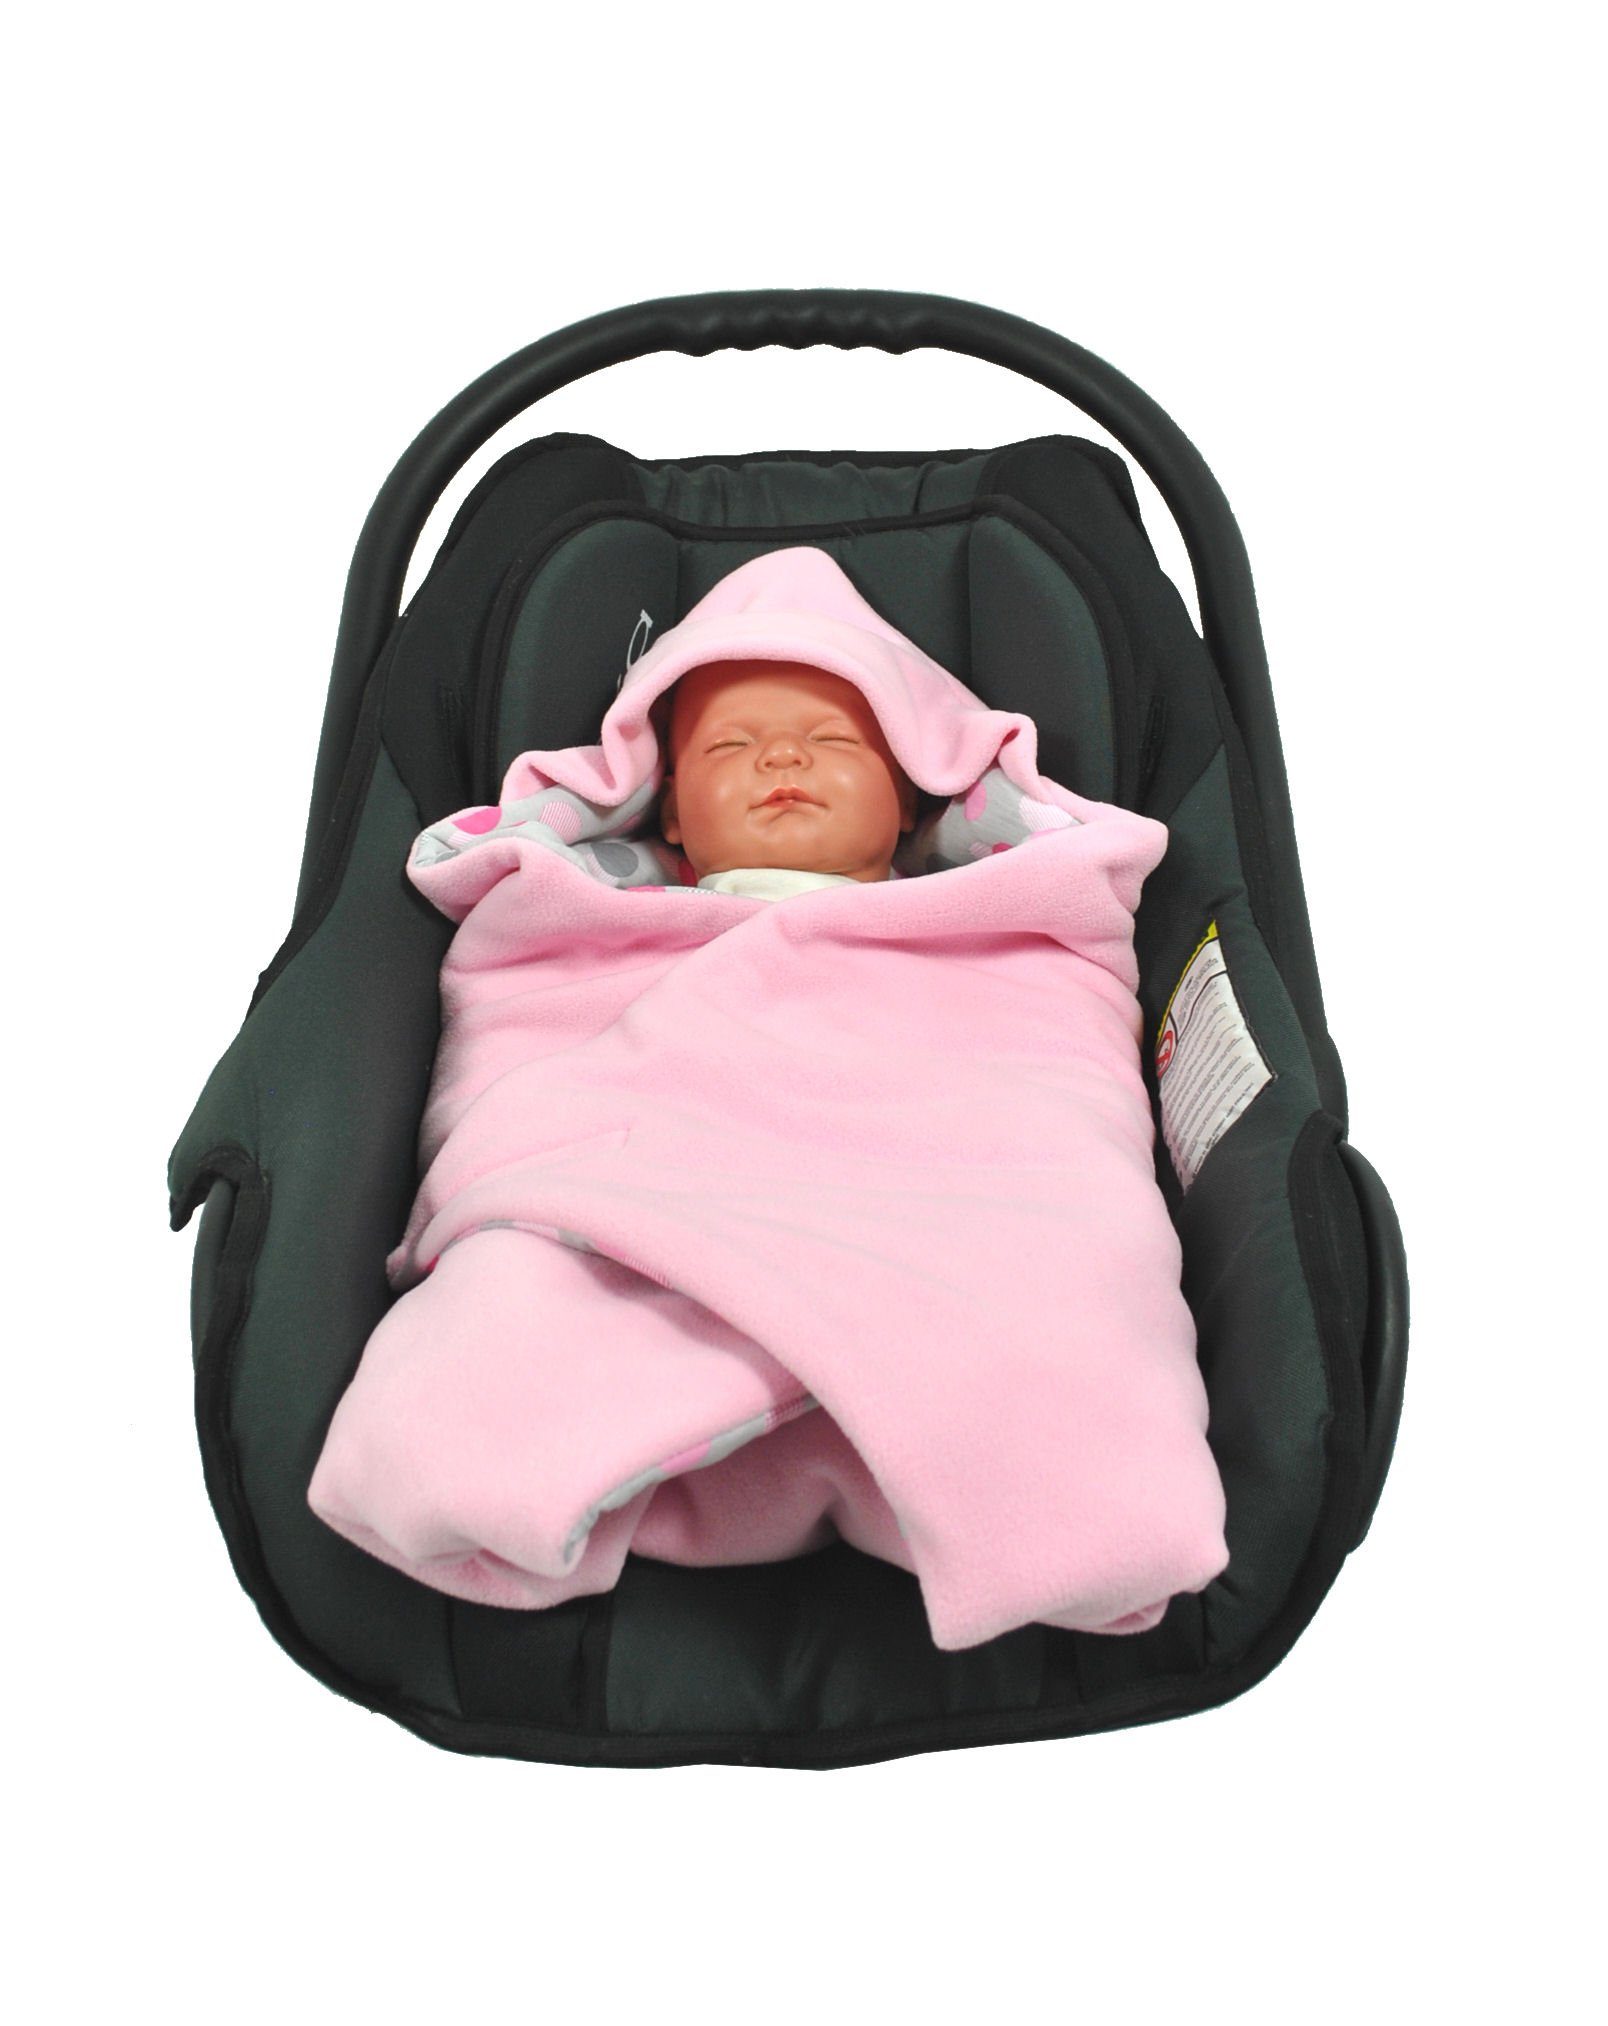 für Babyschale rosa/Punkte Punkt für Winter, geeignet Babyschalenfußsack HOBEA-Germany, 3 die Babyschale Fußsack Einschlagdecke